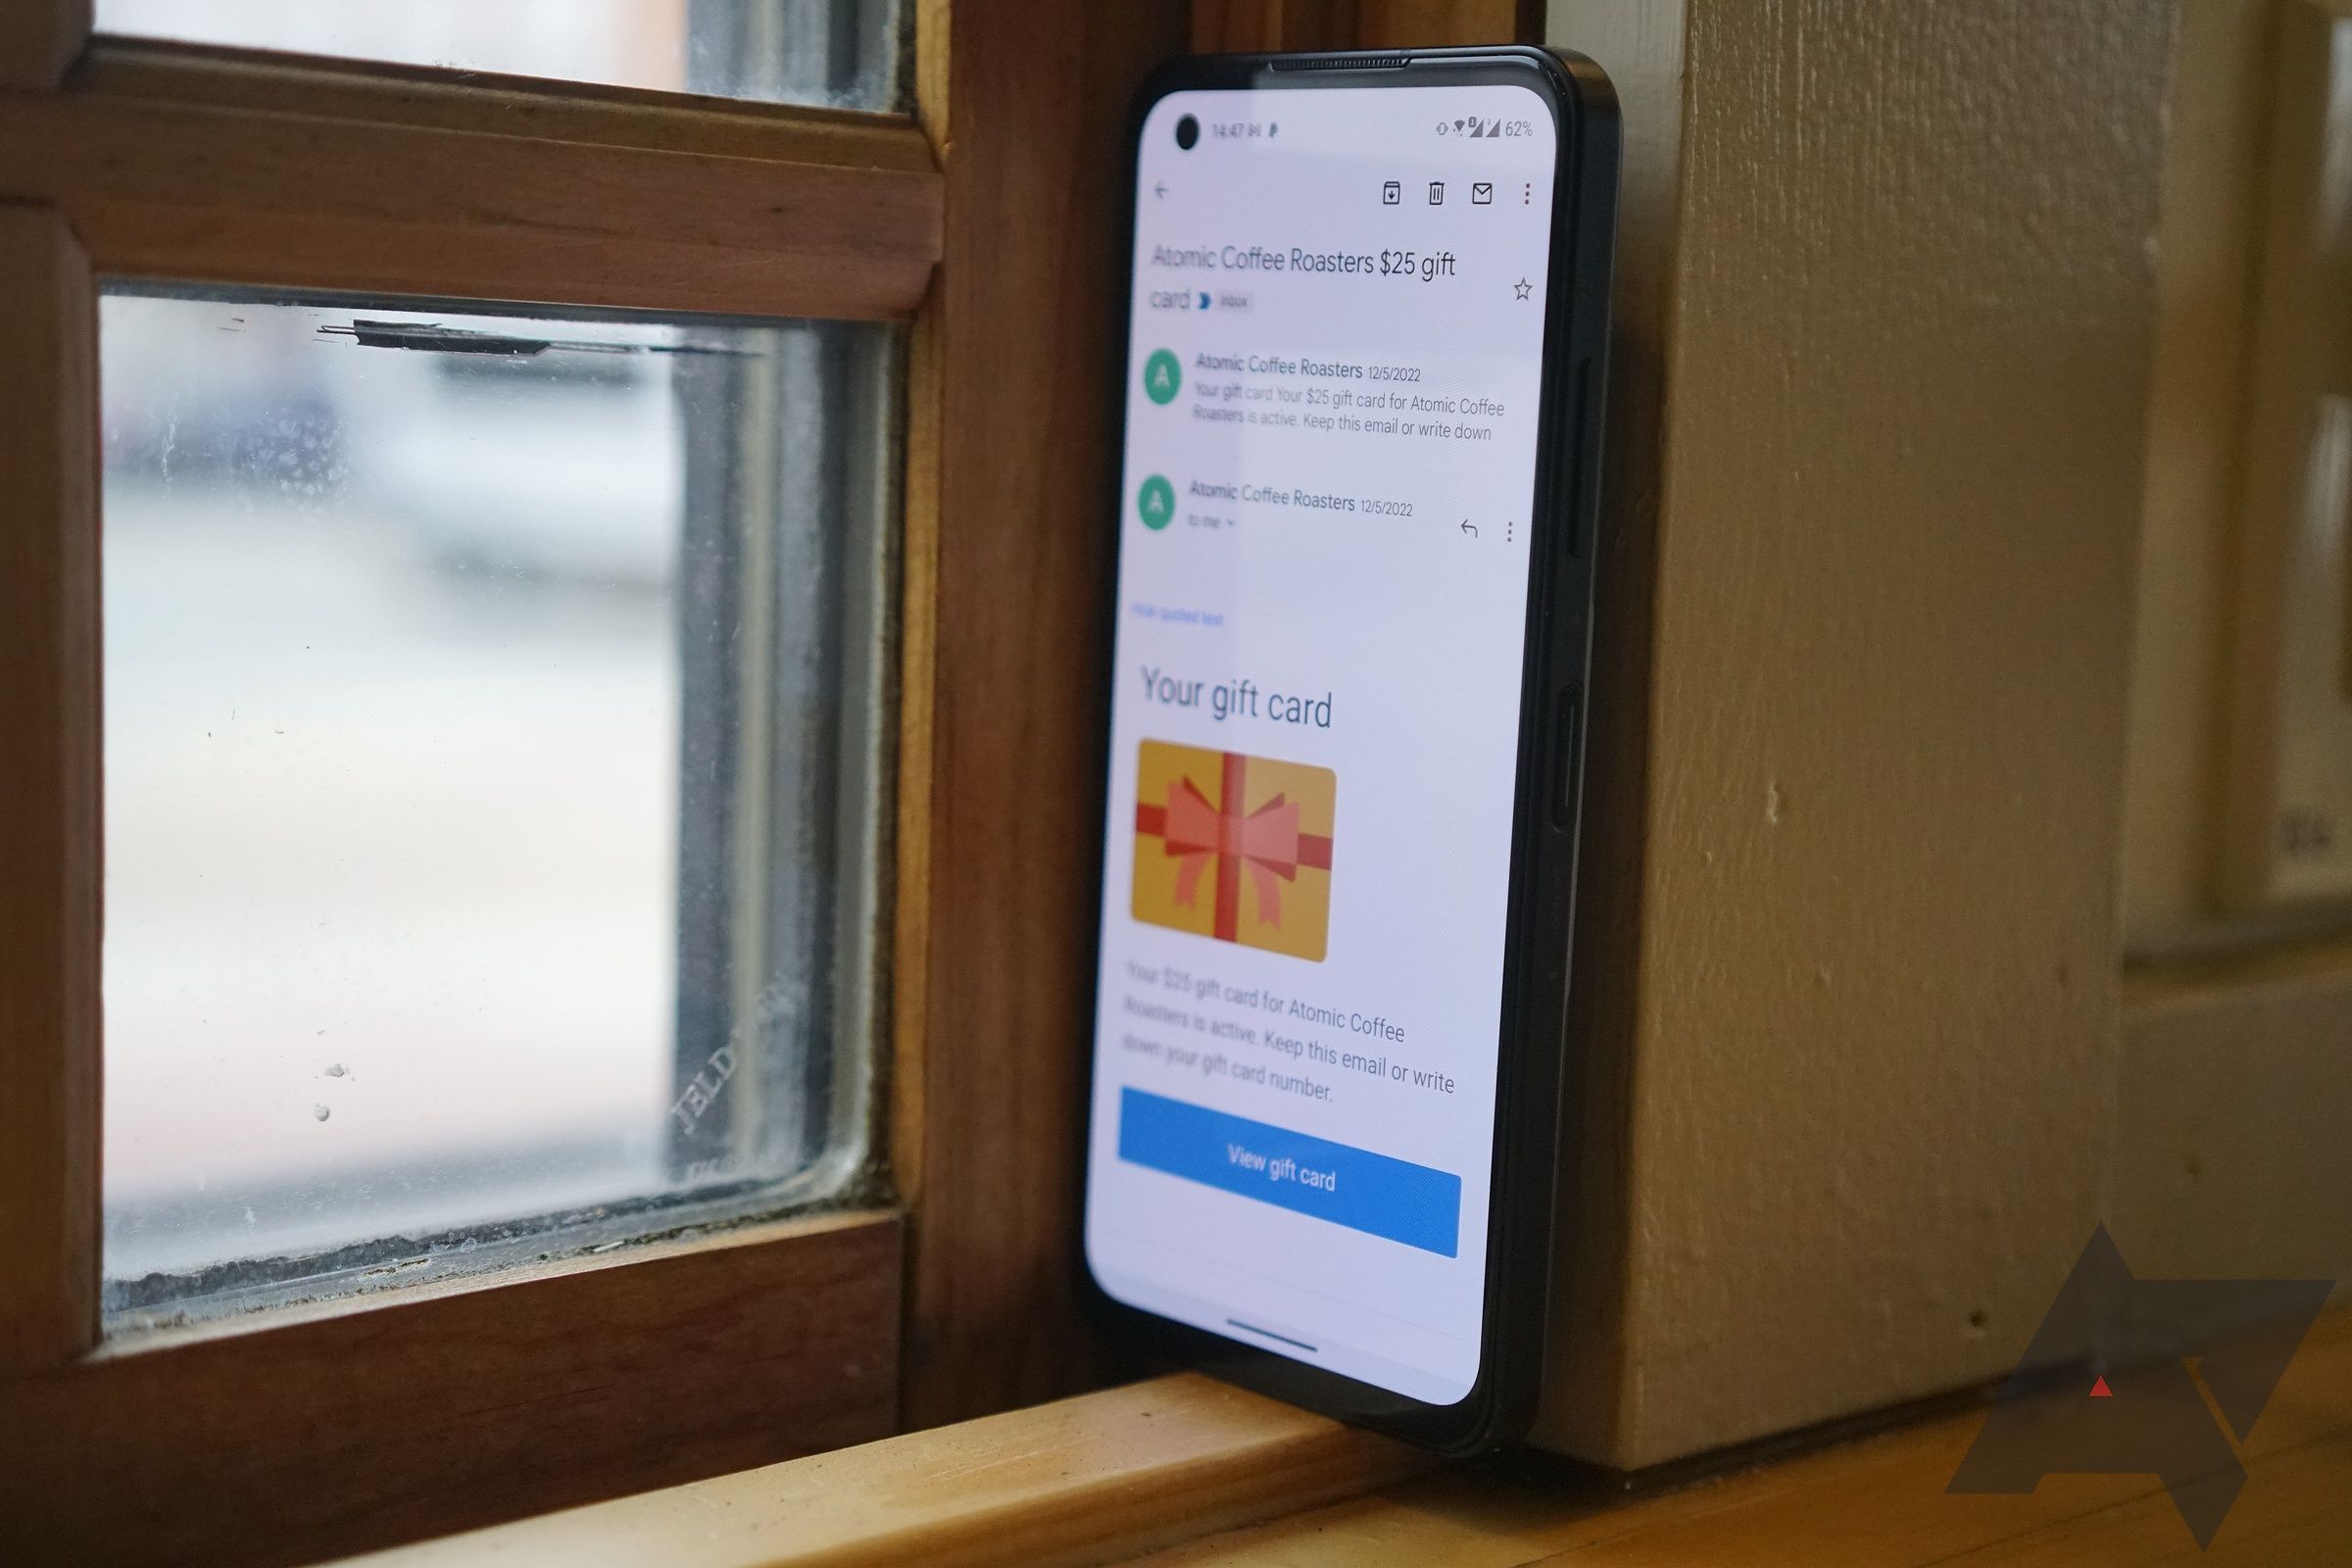 Telefone Android ao lado da janela com display mostrando o aplicativo Gmail.